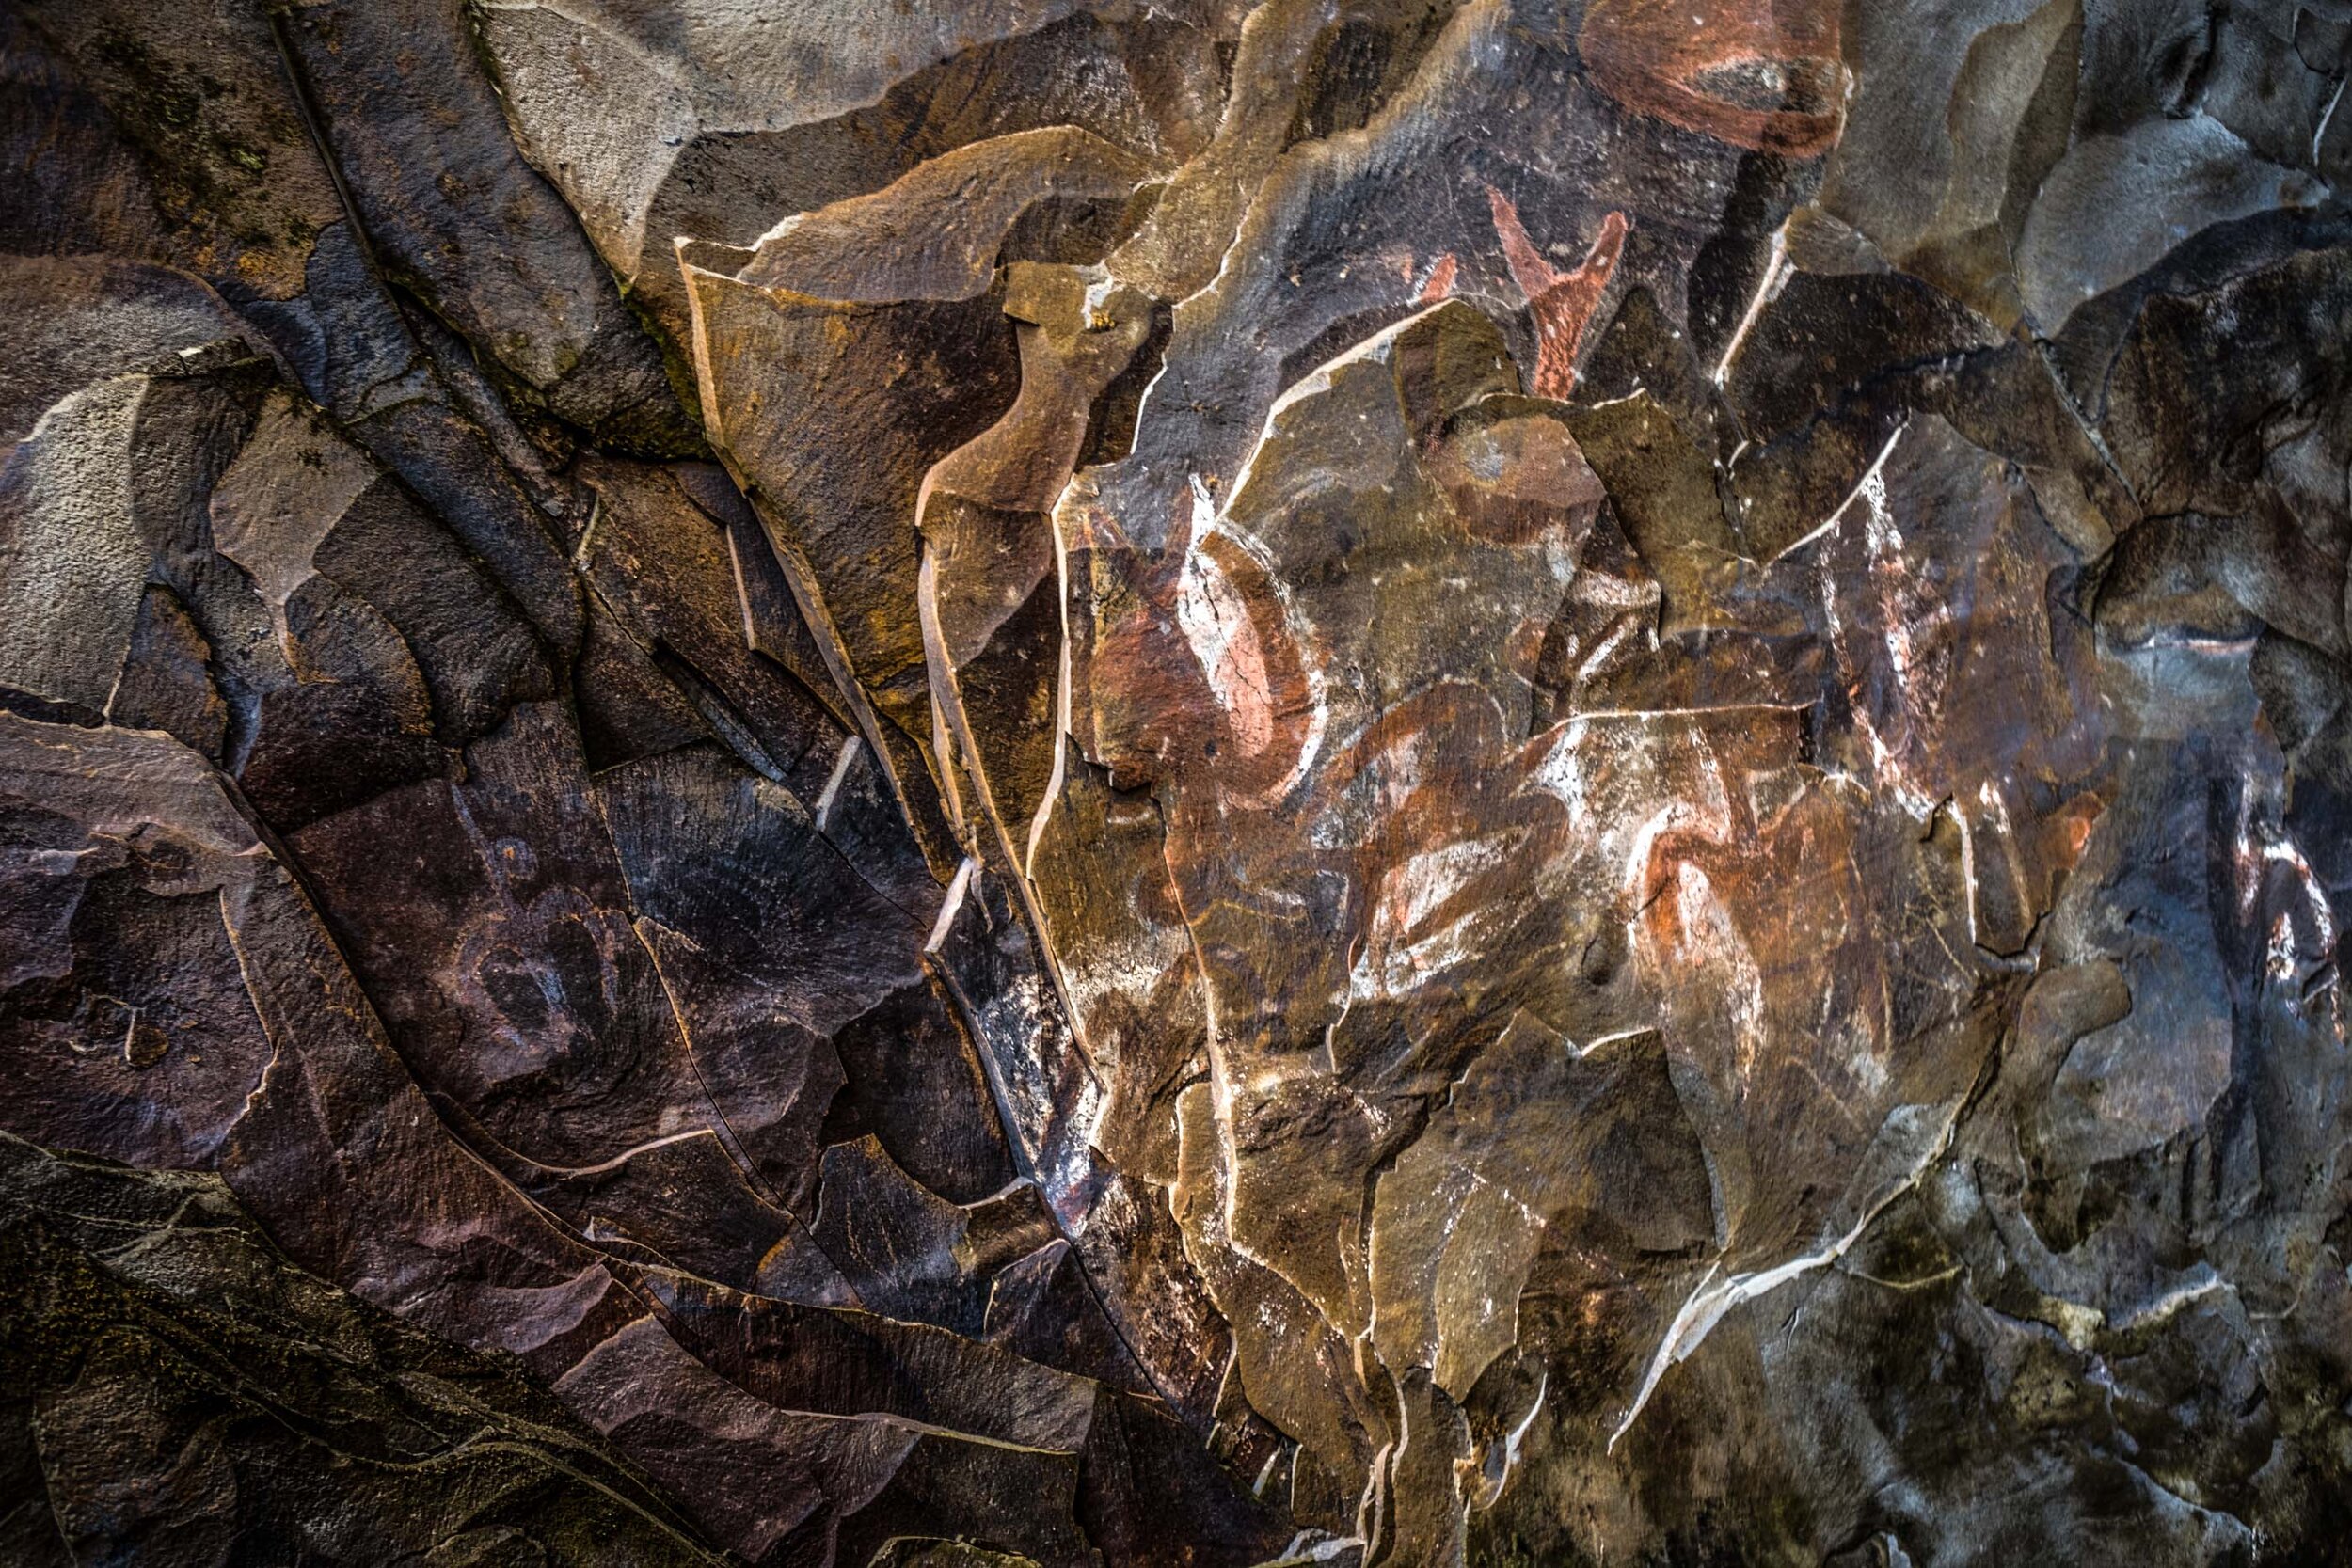  Cave paintings from Birdman cult at Ana Kai Tangata. 